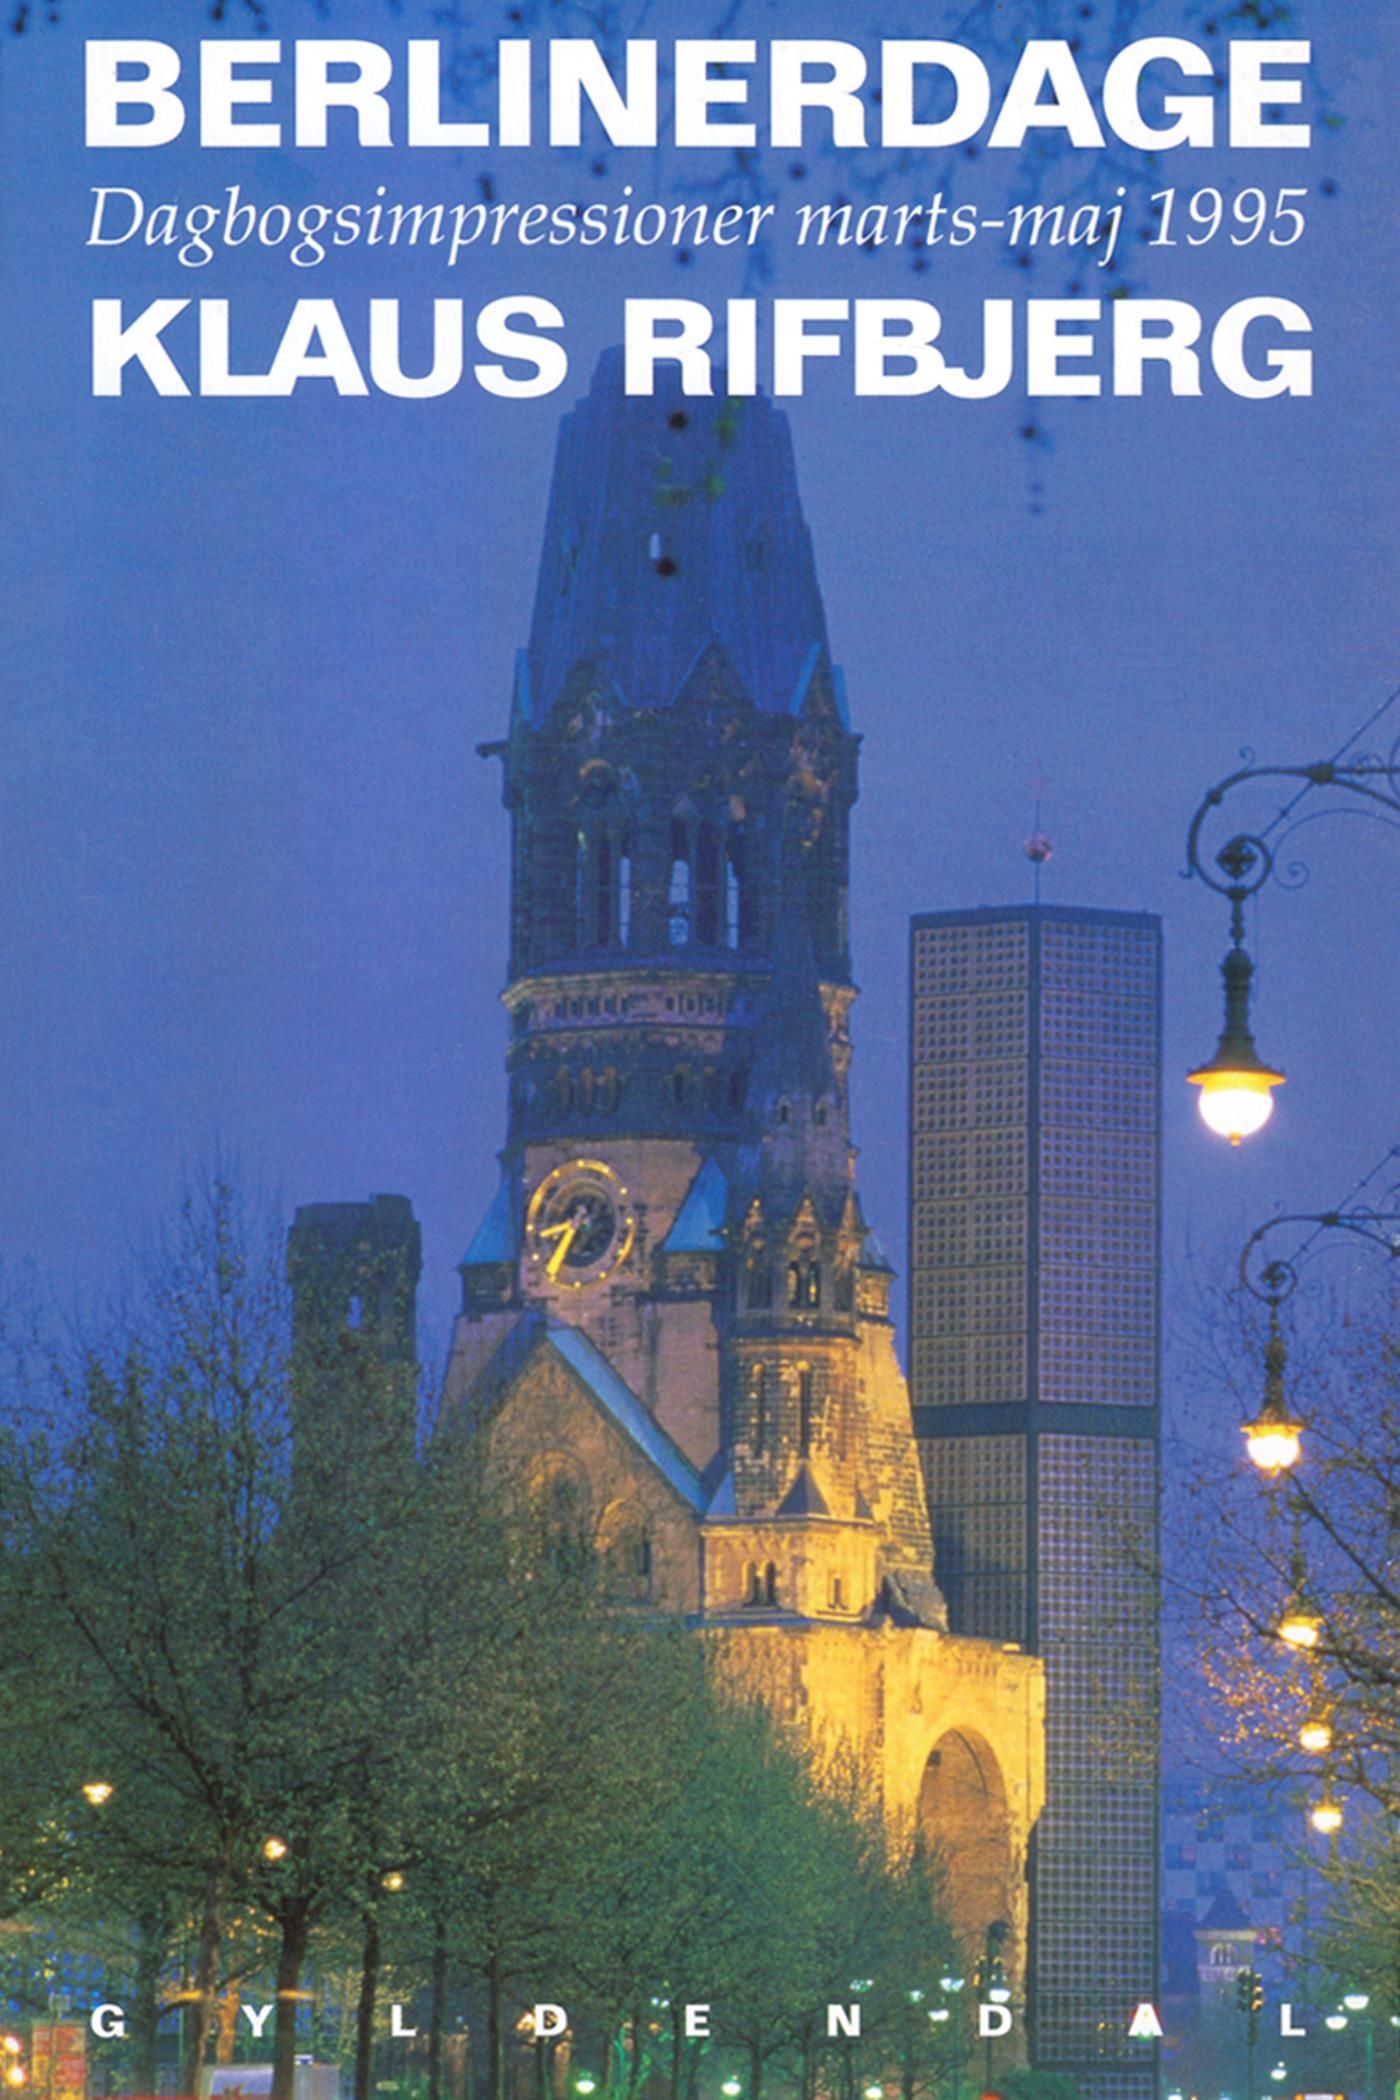 Berlinerdage, e-bog af Klaus Rifbjerg